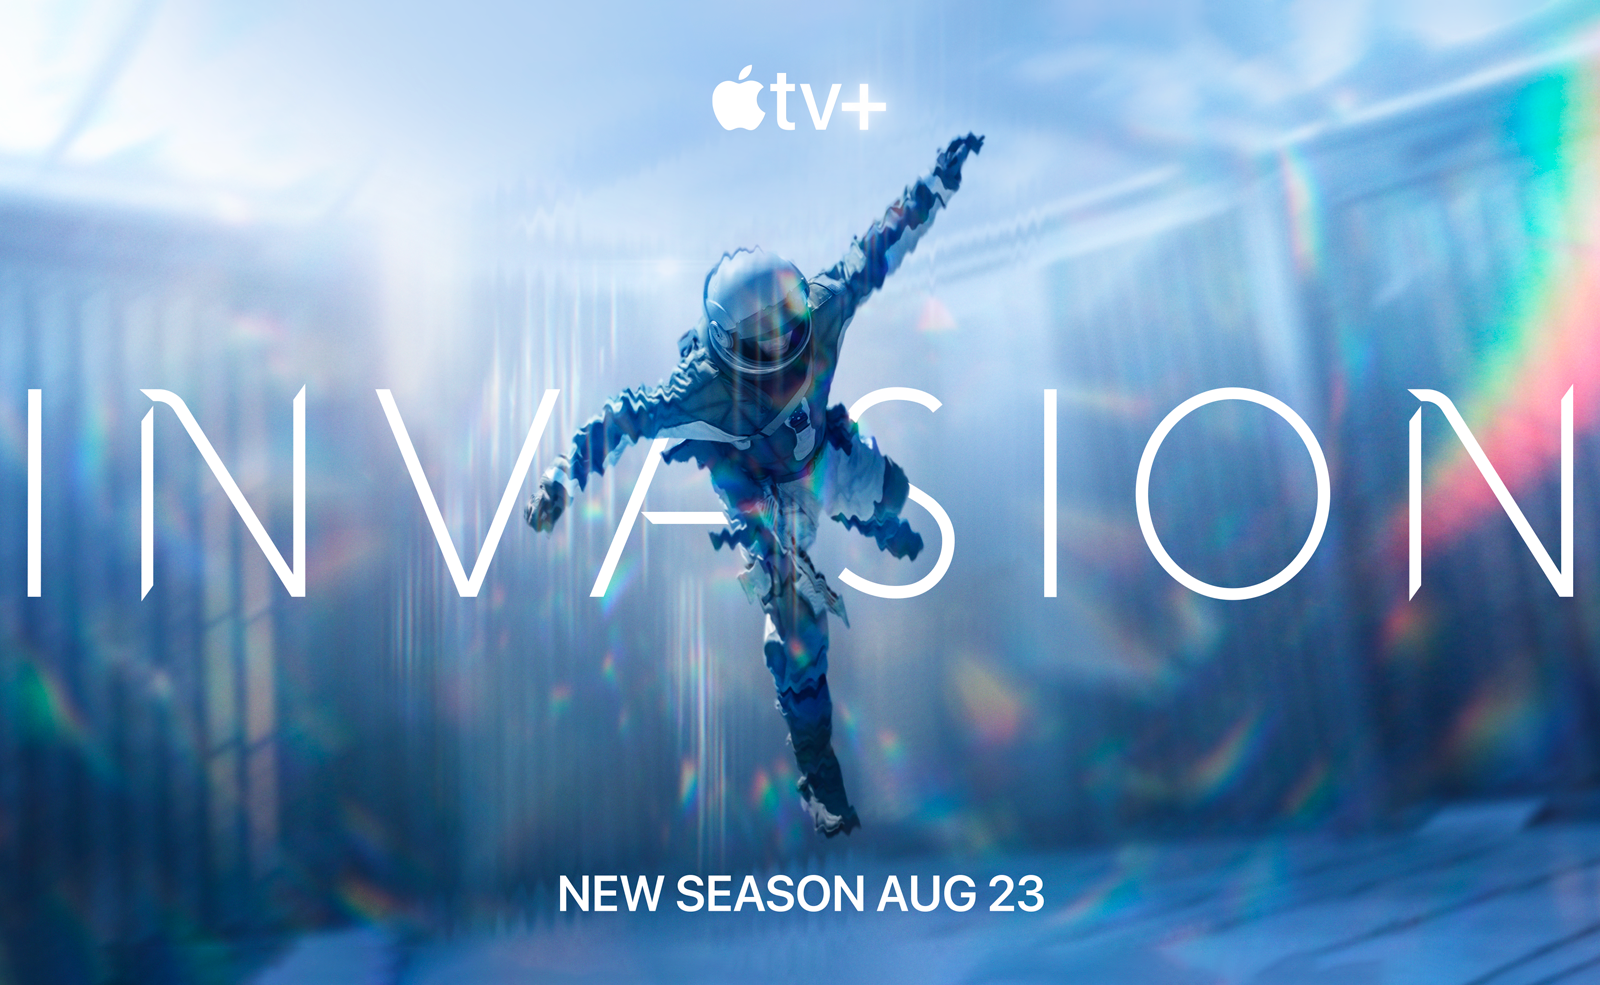 TV • Apple présente la bande-annonce de la deuxième saison de la série Invasion